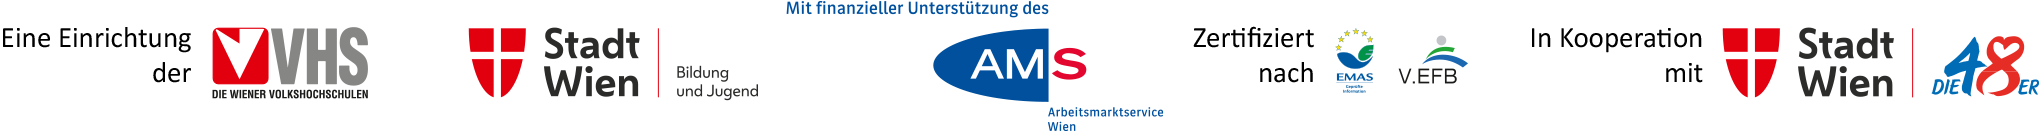 Fördergeber Logos: VHS Wien, MA 12, AMS Wien; Zertifiziert nach: EMAS, V.EFB; in Kooperation mit: MA 48